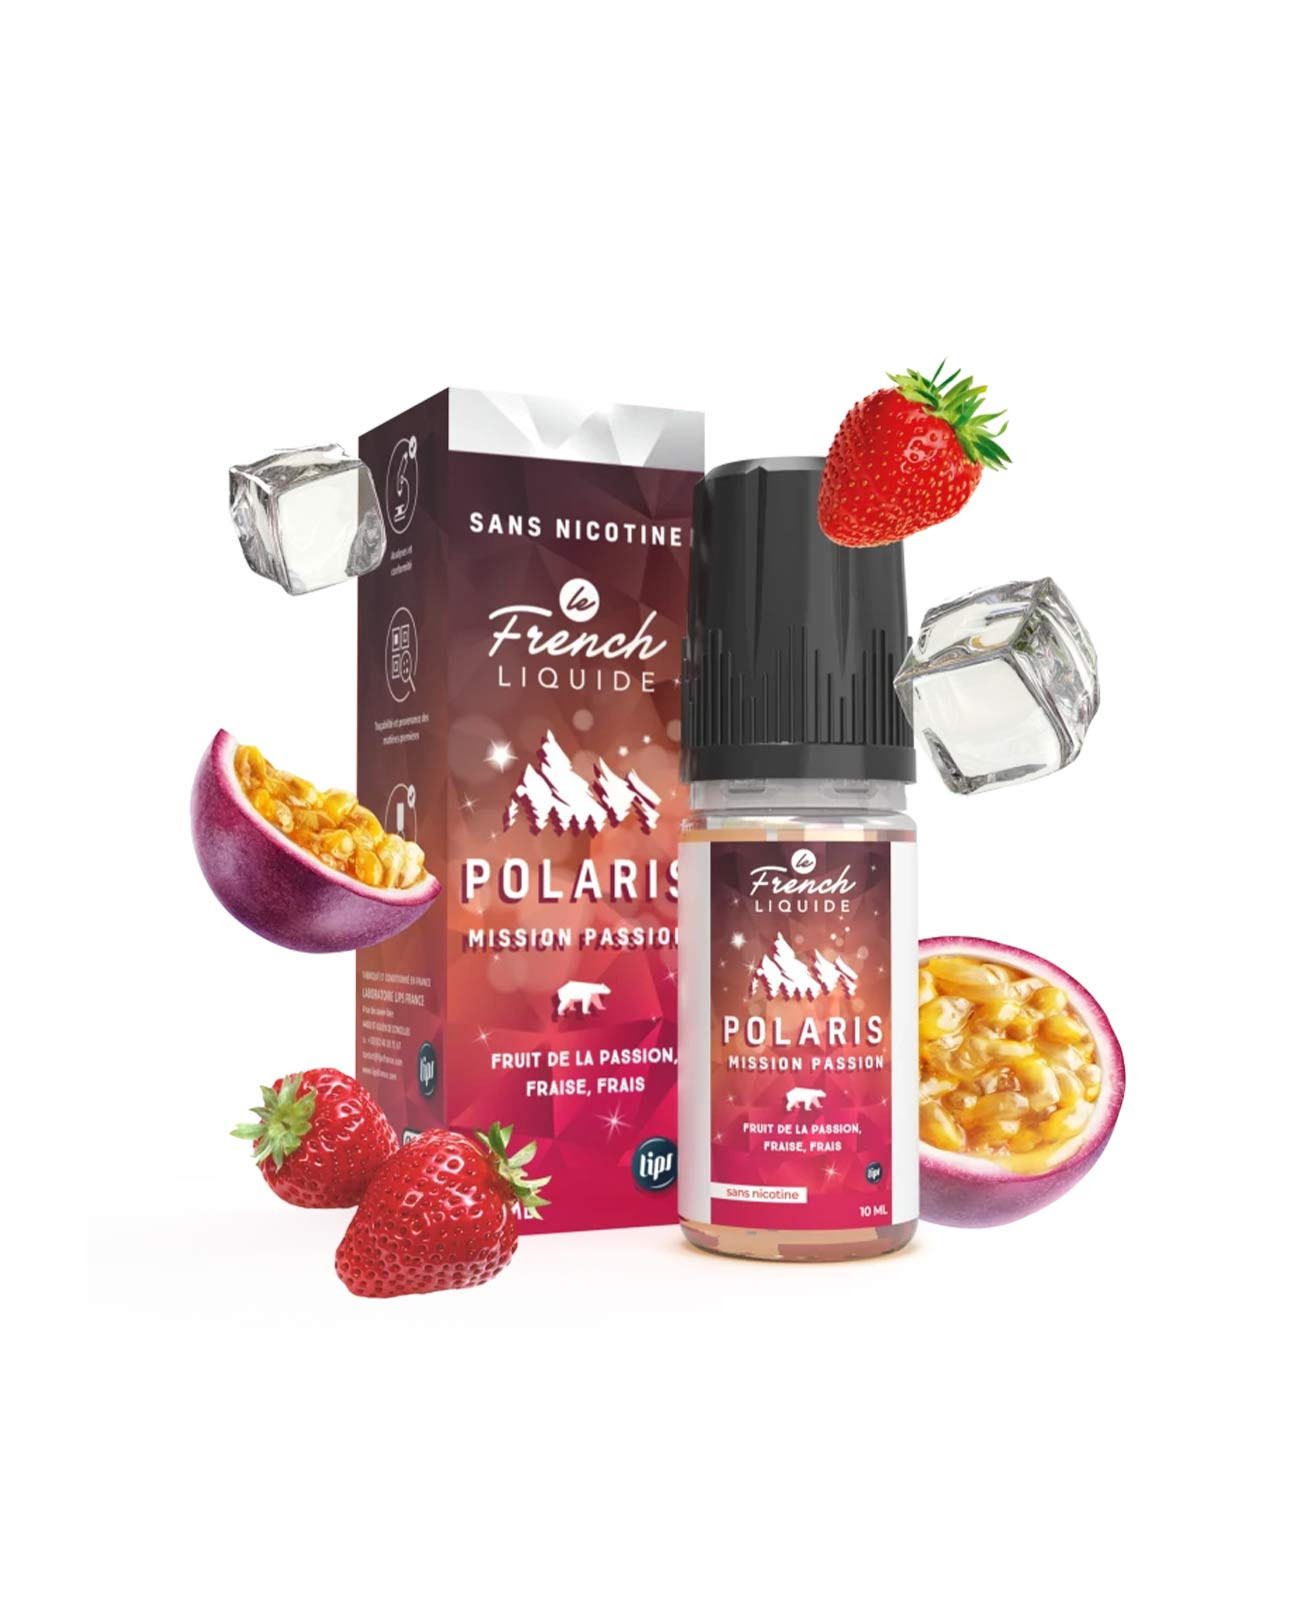 E-liquide Mission Passion Polaris du French Liquide fruit de la passion fraise avec sa boîte